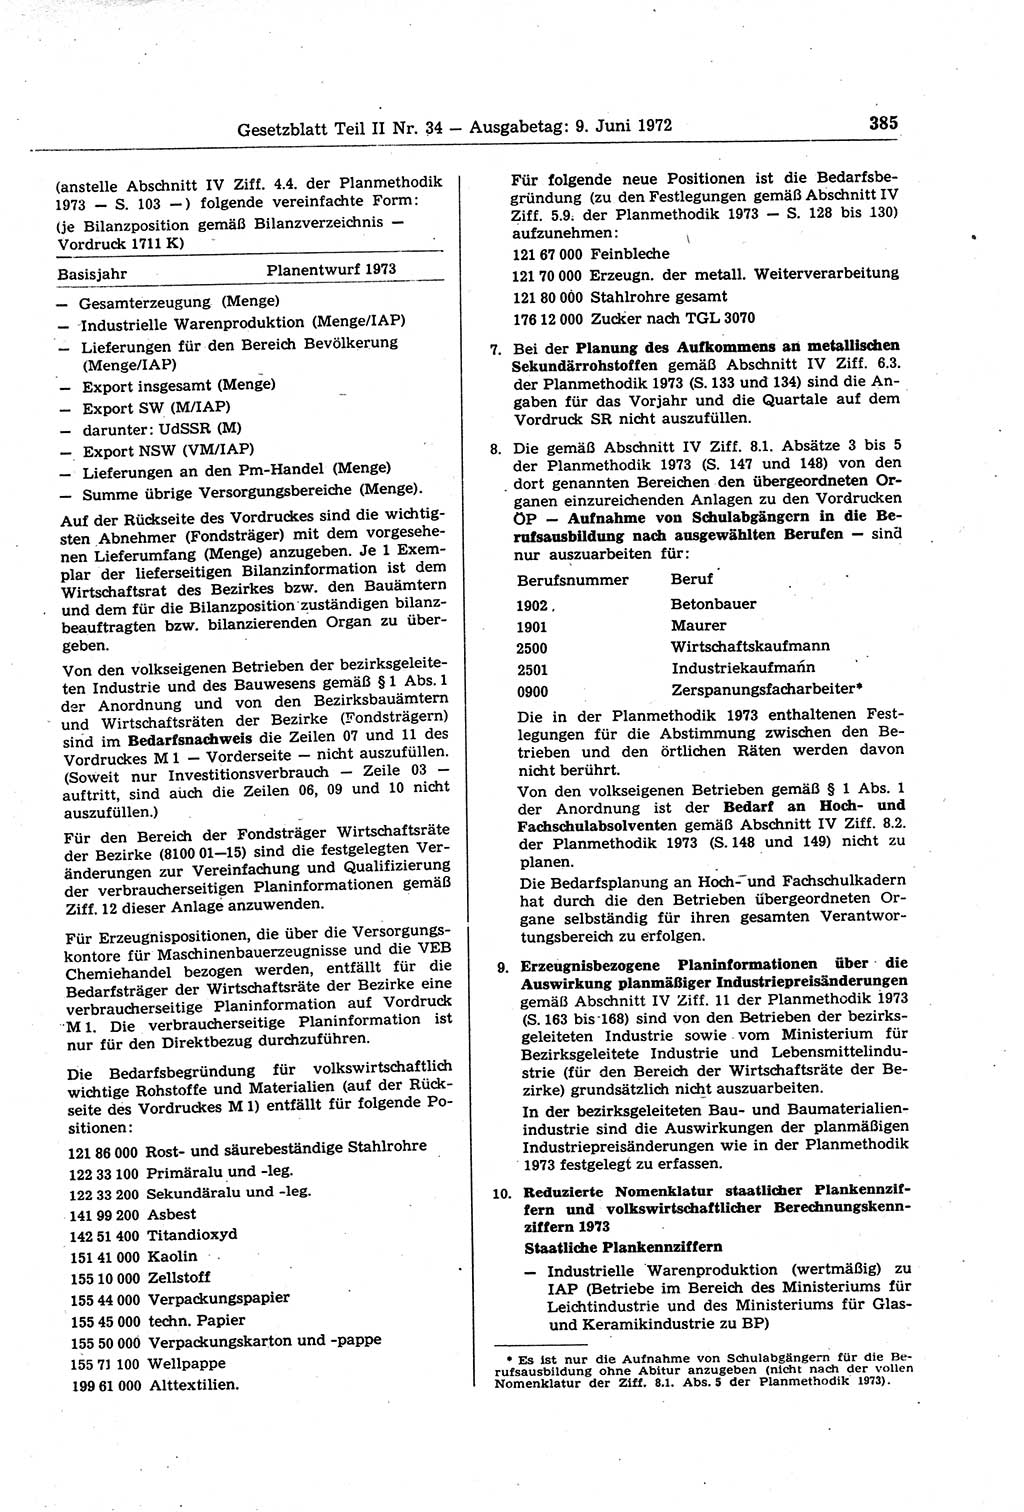 Gesetzblatt (GBl.) der Deutschen Demokratischen Republik (DDR) Teil ⅠⅠ 1972, Seite 385 (GBl. DDR ⅠⅠ 1972, S. 385)